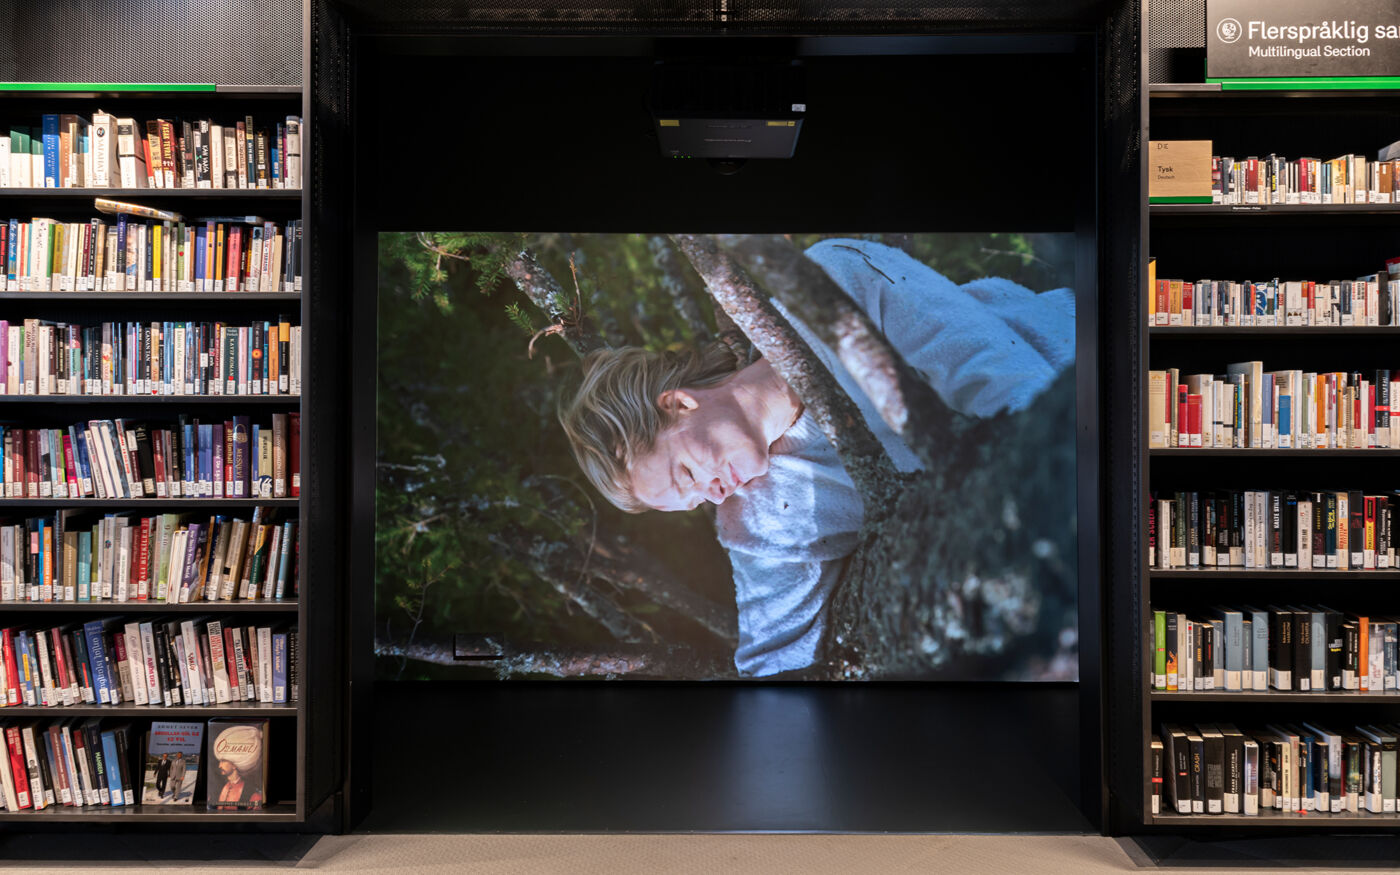 Bilde viser projisering av film på skjerm i biblioteket, i et avlukke flankert av bokhyller. Foto